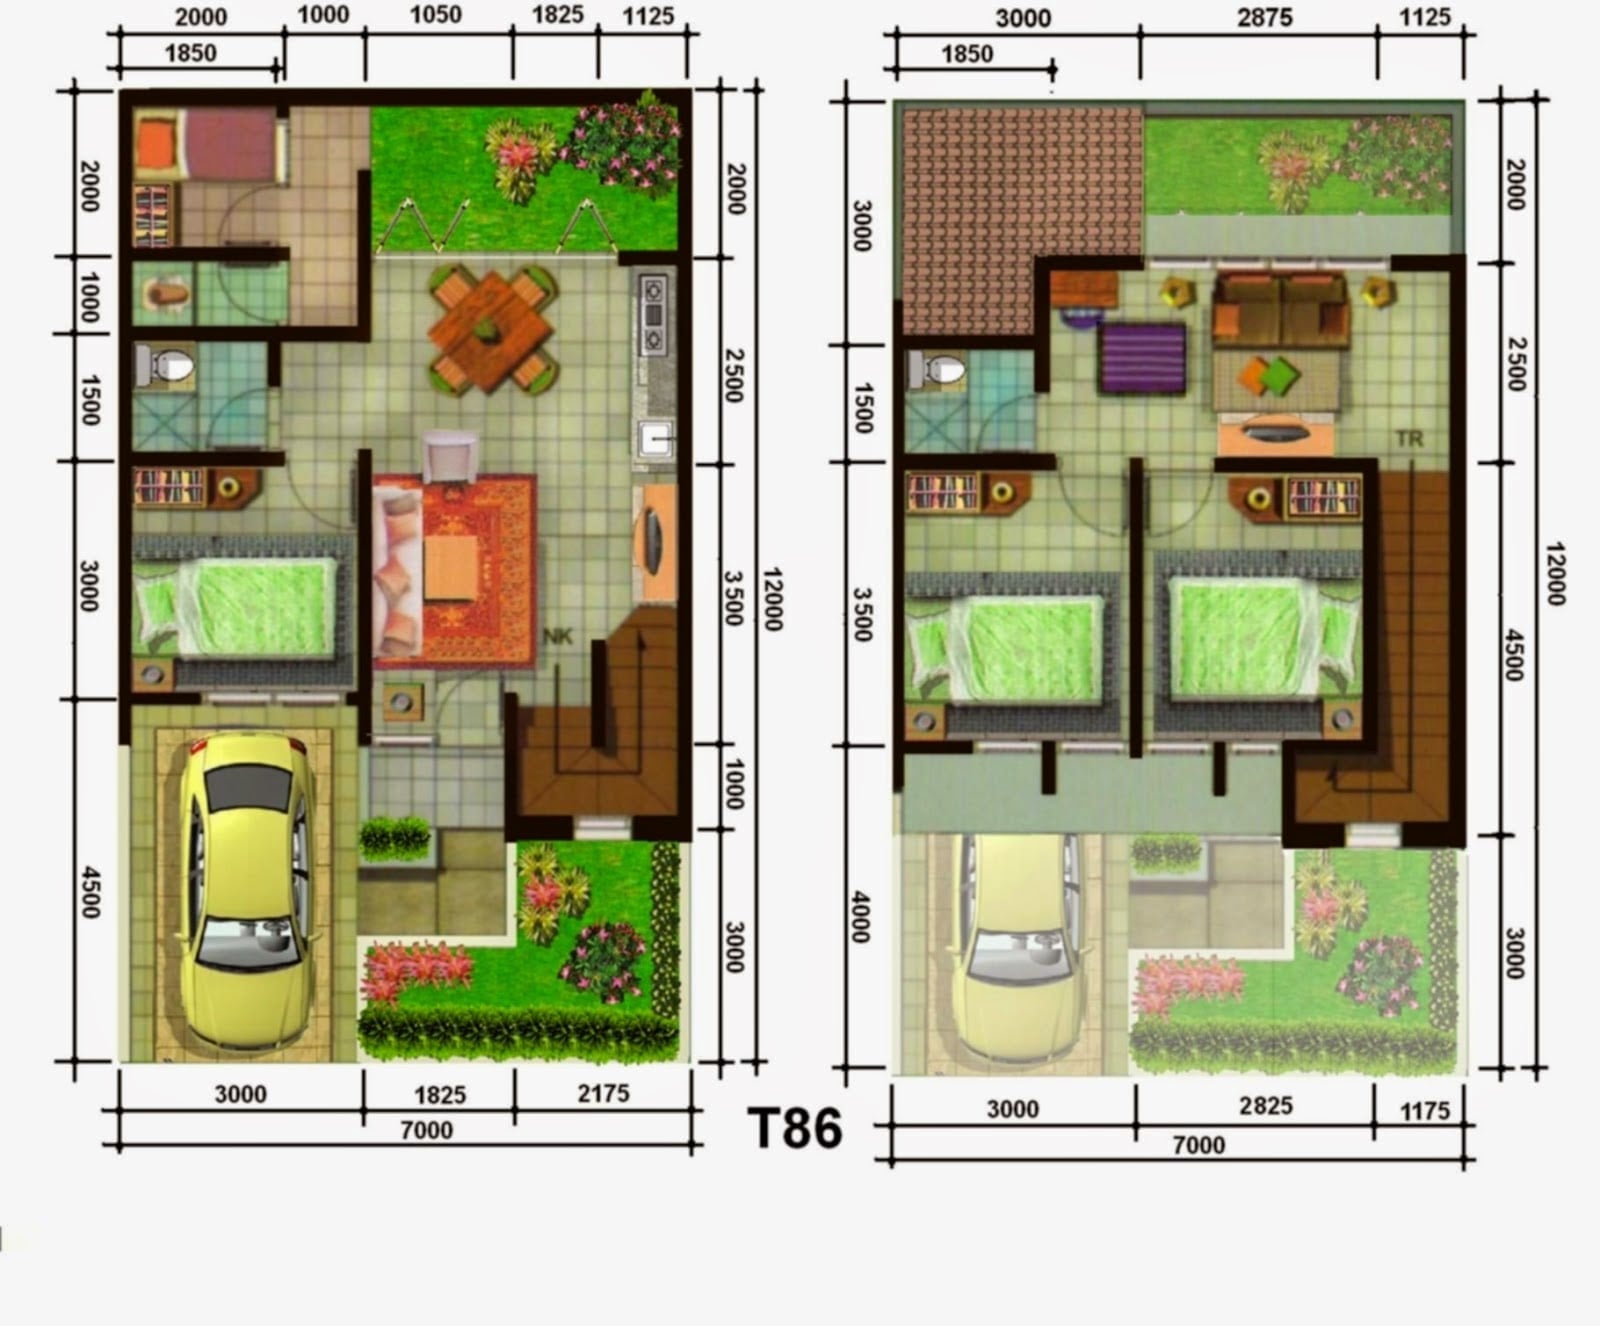 Besar Desain Rumah Sederhana Ukuran 7x12 80 Untuk Inspirasi Ide Desain Interior Rumah dengan Desain Rumah Sederhana Ukuran 7x12